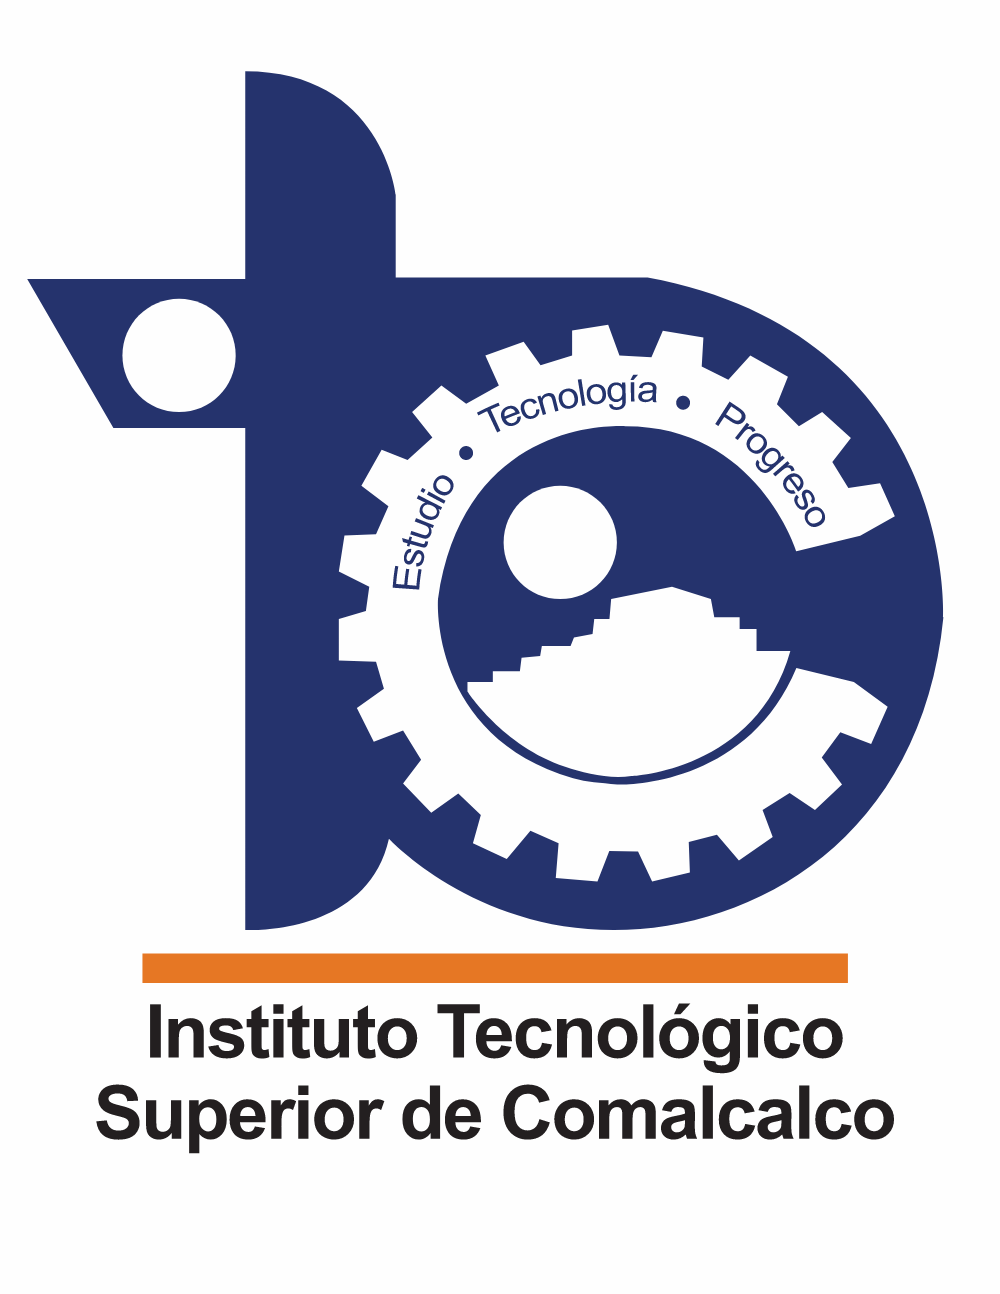 Instituto Tecnologico de Comalcalco Logo Logos